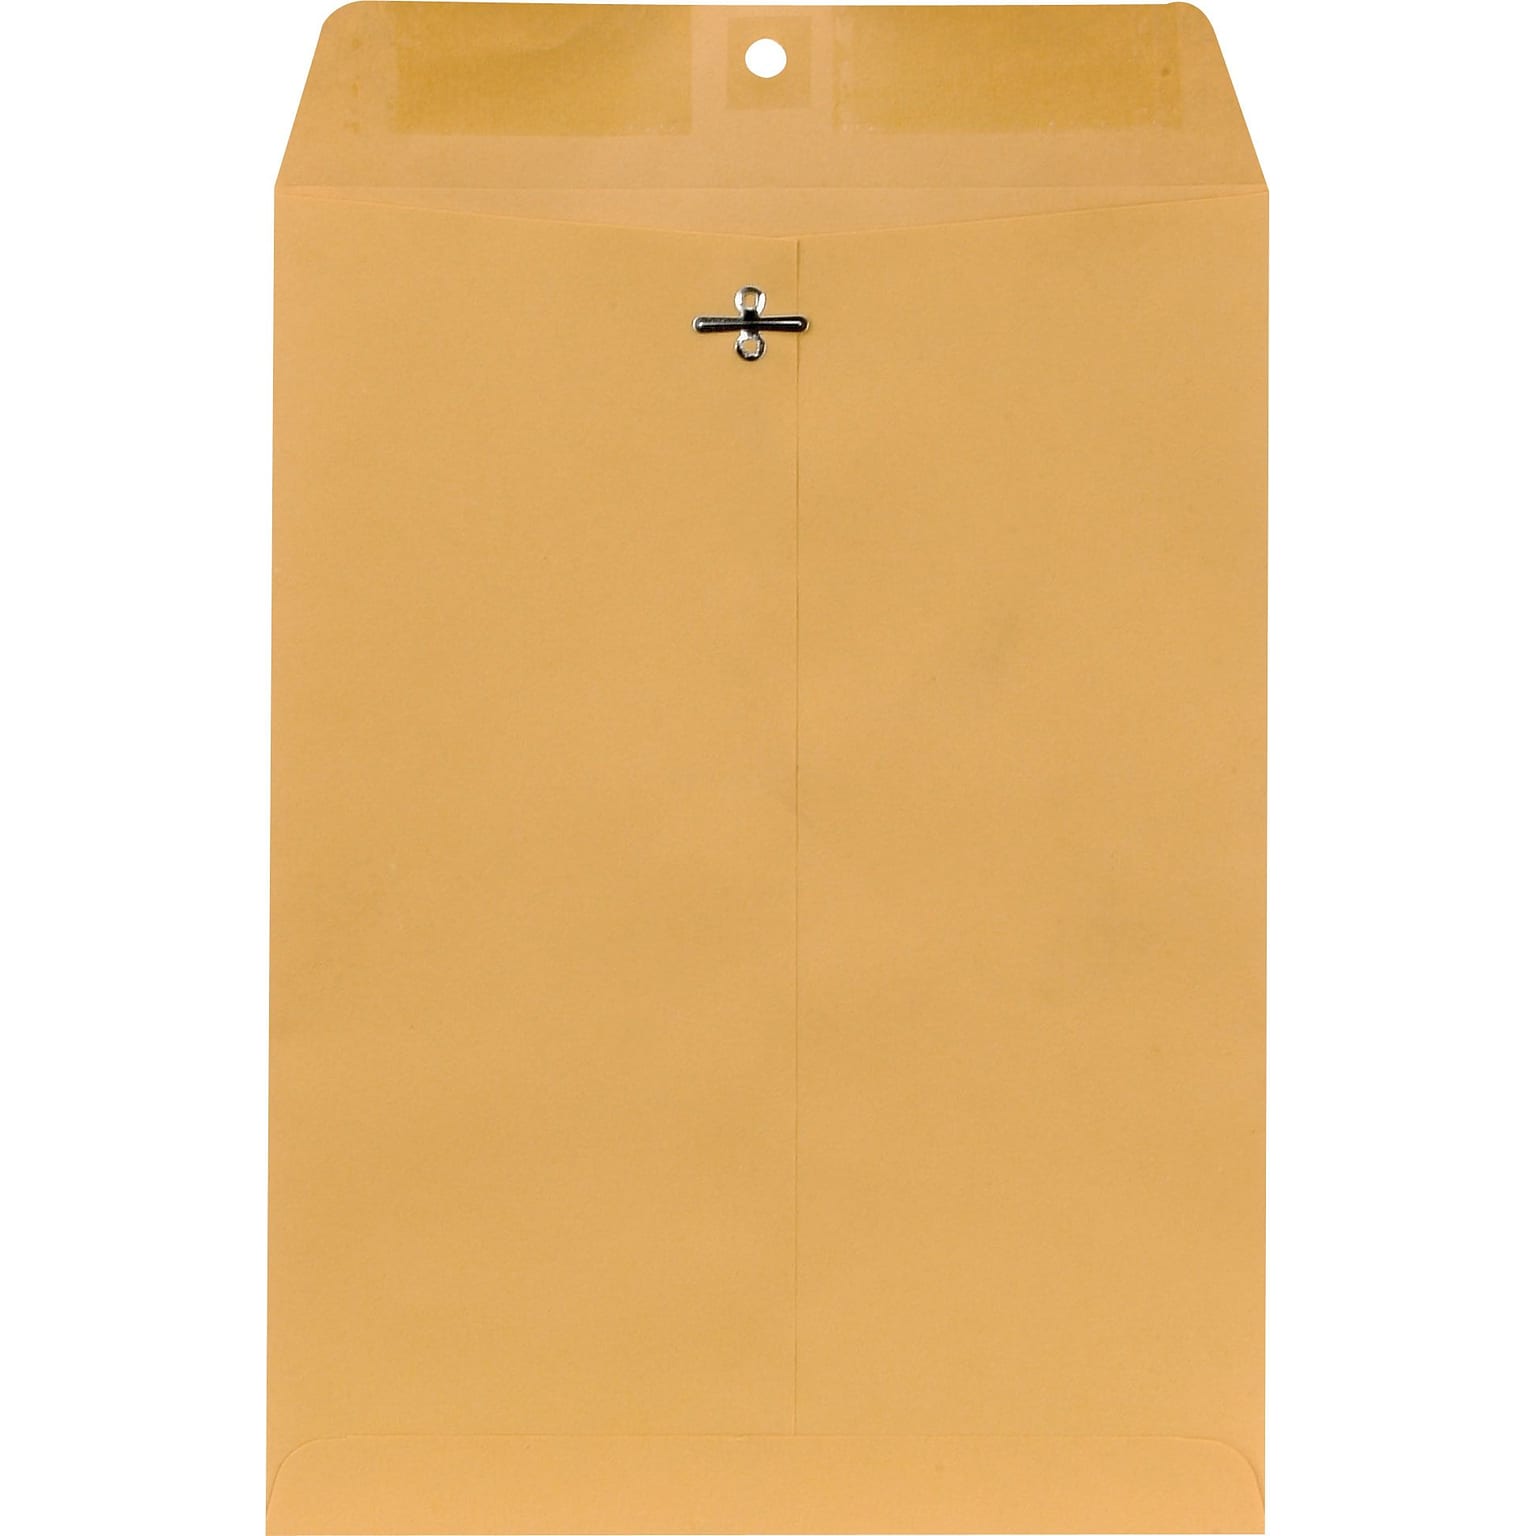 Brown Kraft Clasp Envelopes 9 x 12, 250/Box